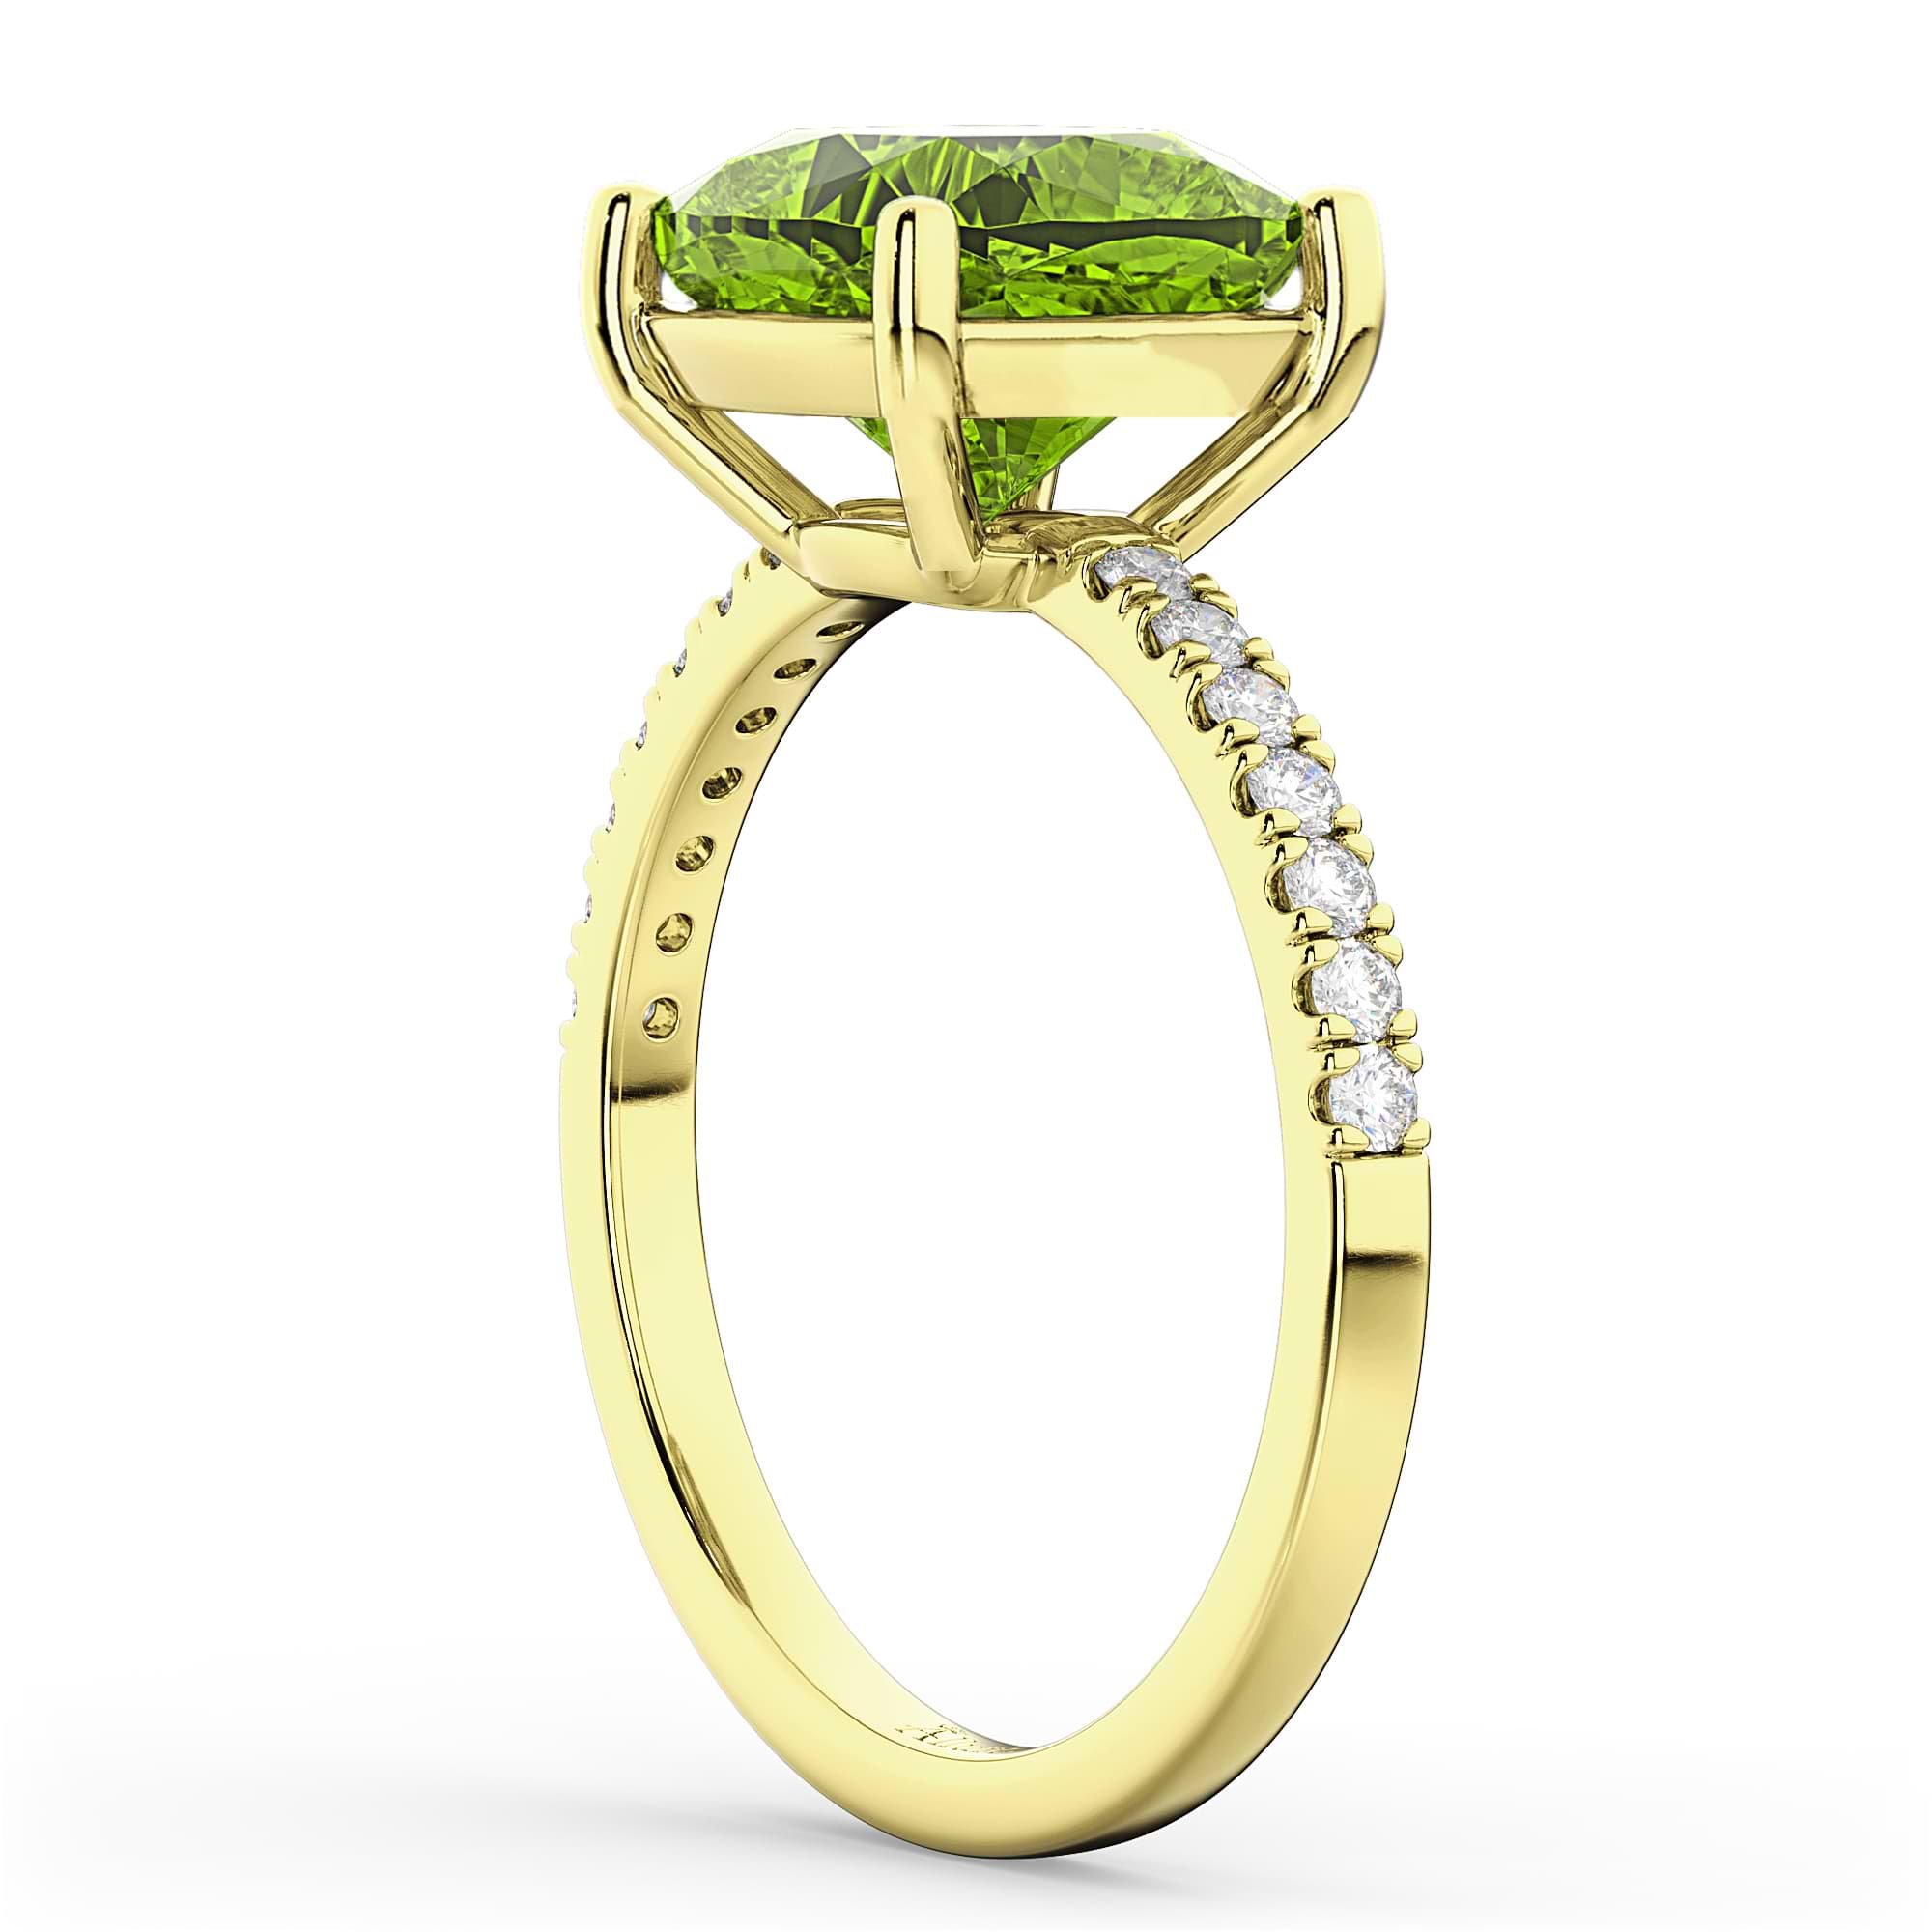 Cushion Cut Peridot & Diamond Engagement Ring 14k Yellow Gold (2.81ct)